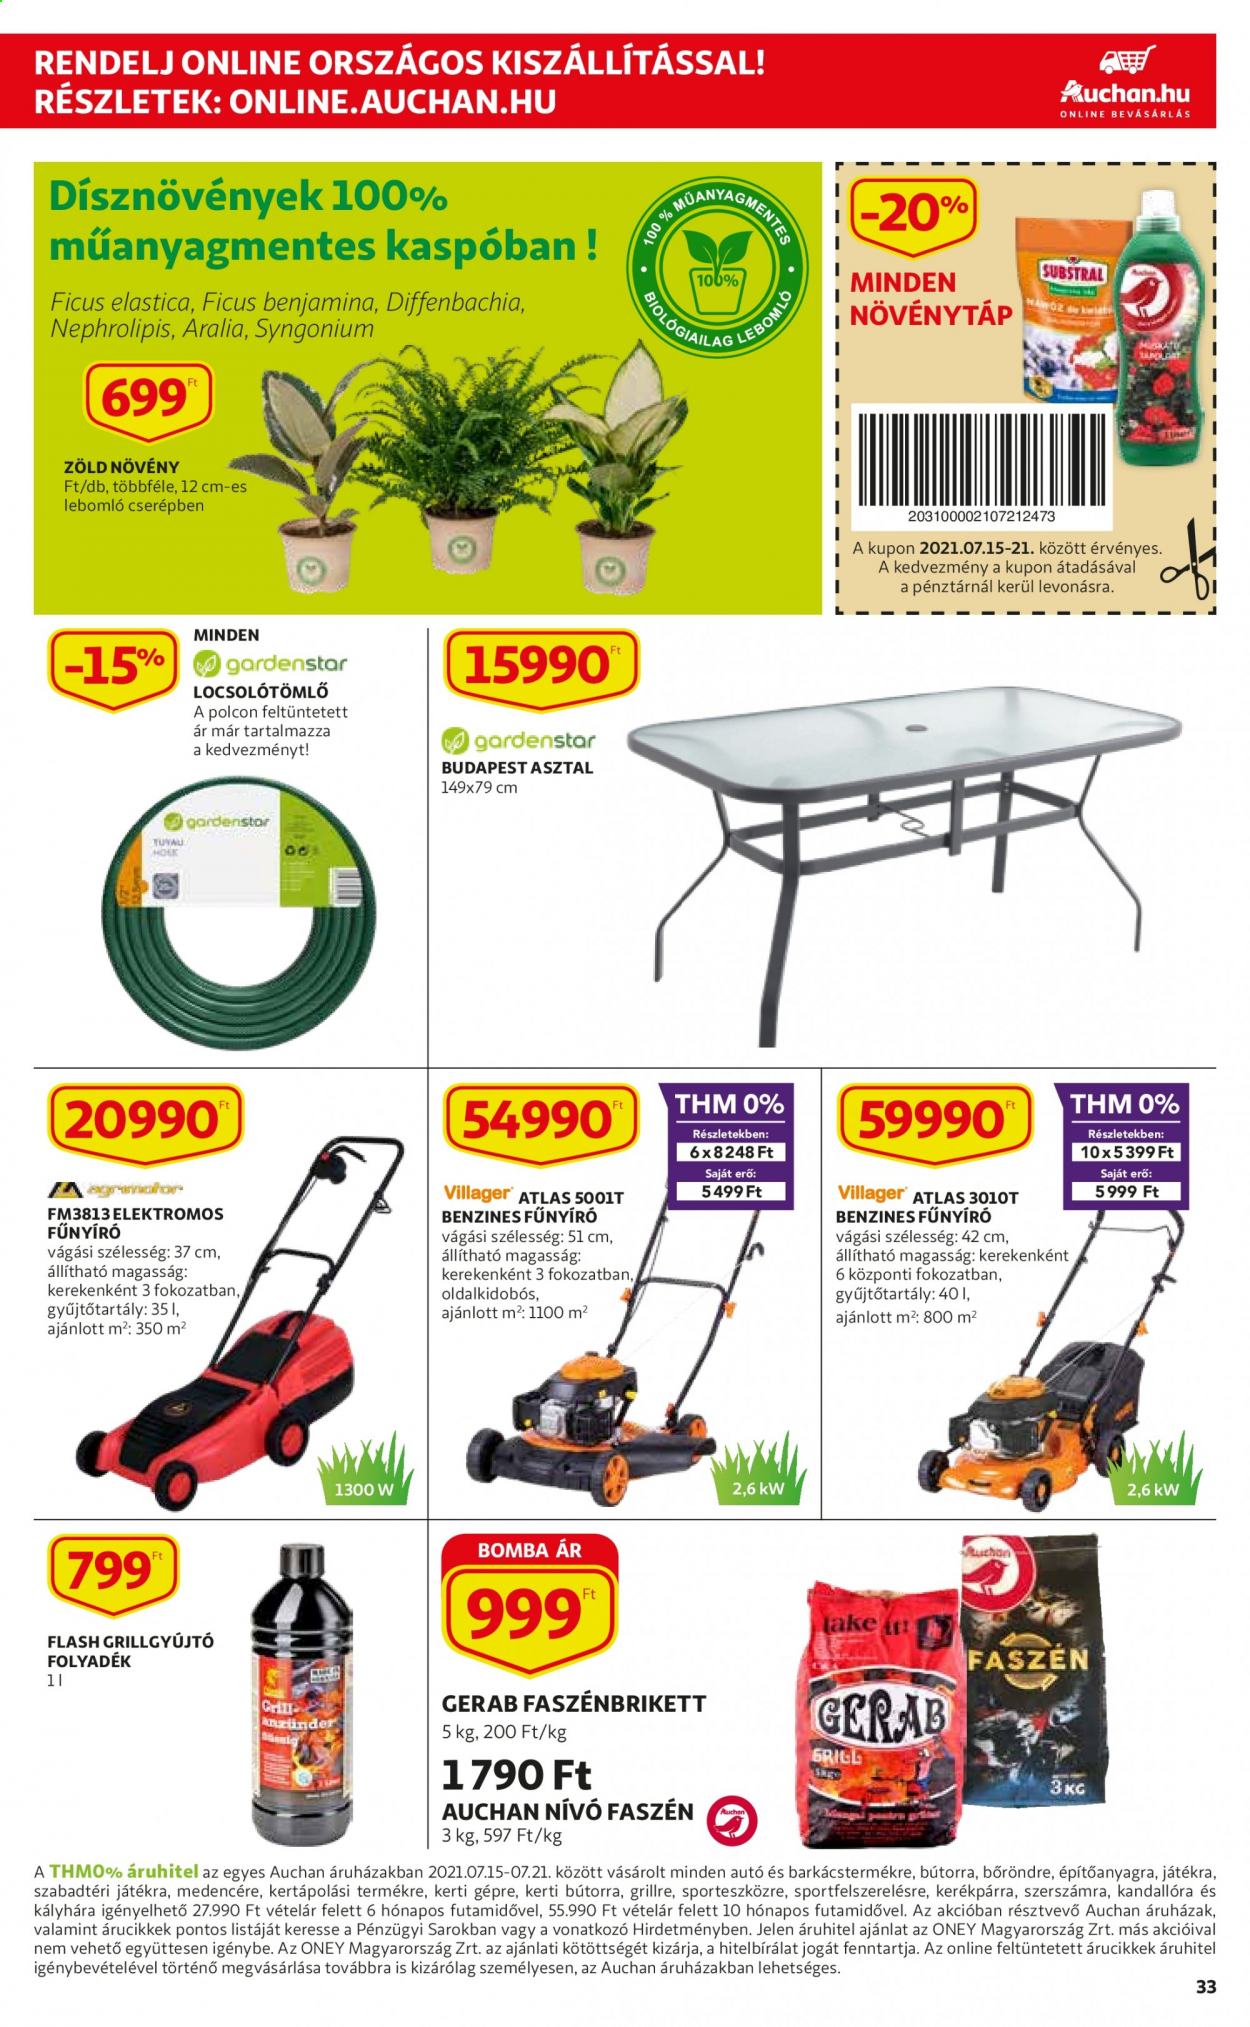 thumbnail - Auchan akciós újsága  - 2021.07.15 - 2021.07.21 - Akciós termékek - asztal, elektromos fünyíró, benzines fünyíró, locsolótömlő.  33. Oldal